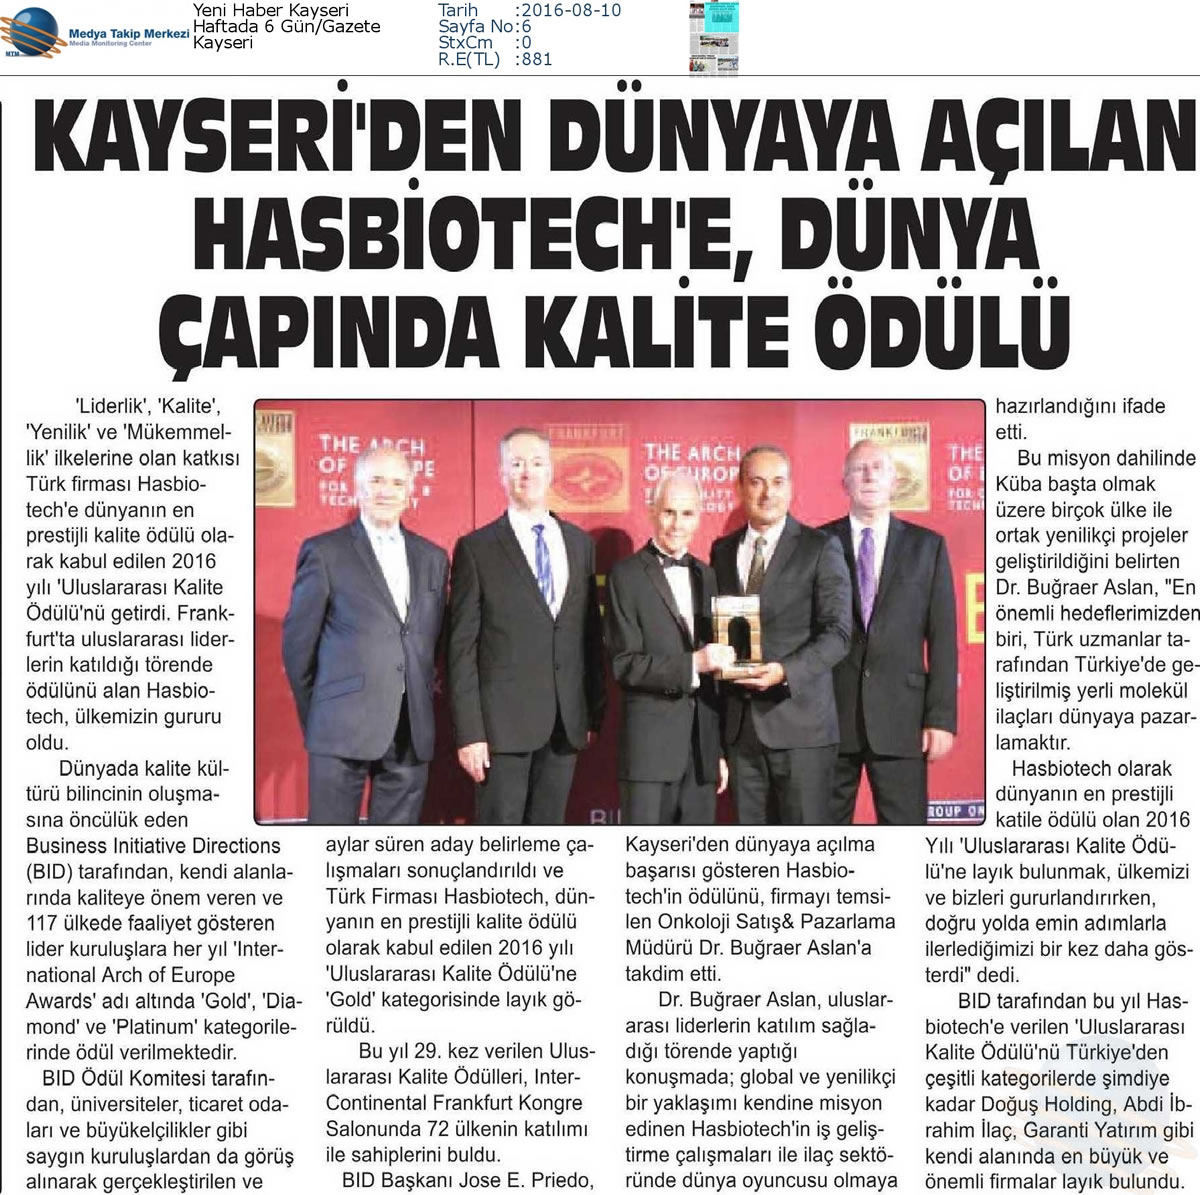 Yeni Haber Kayseri Gazetesi